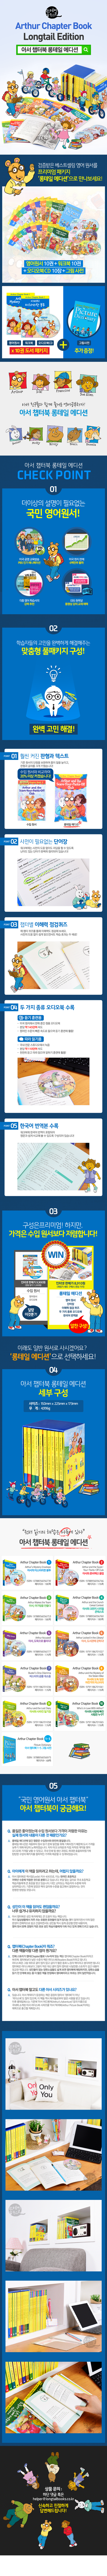 아서챕터북 10권 박스 세트_판매 페이지(최종)